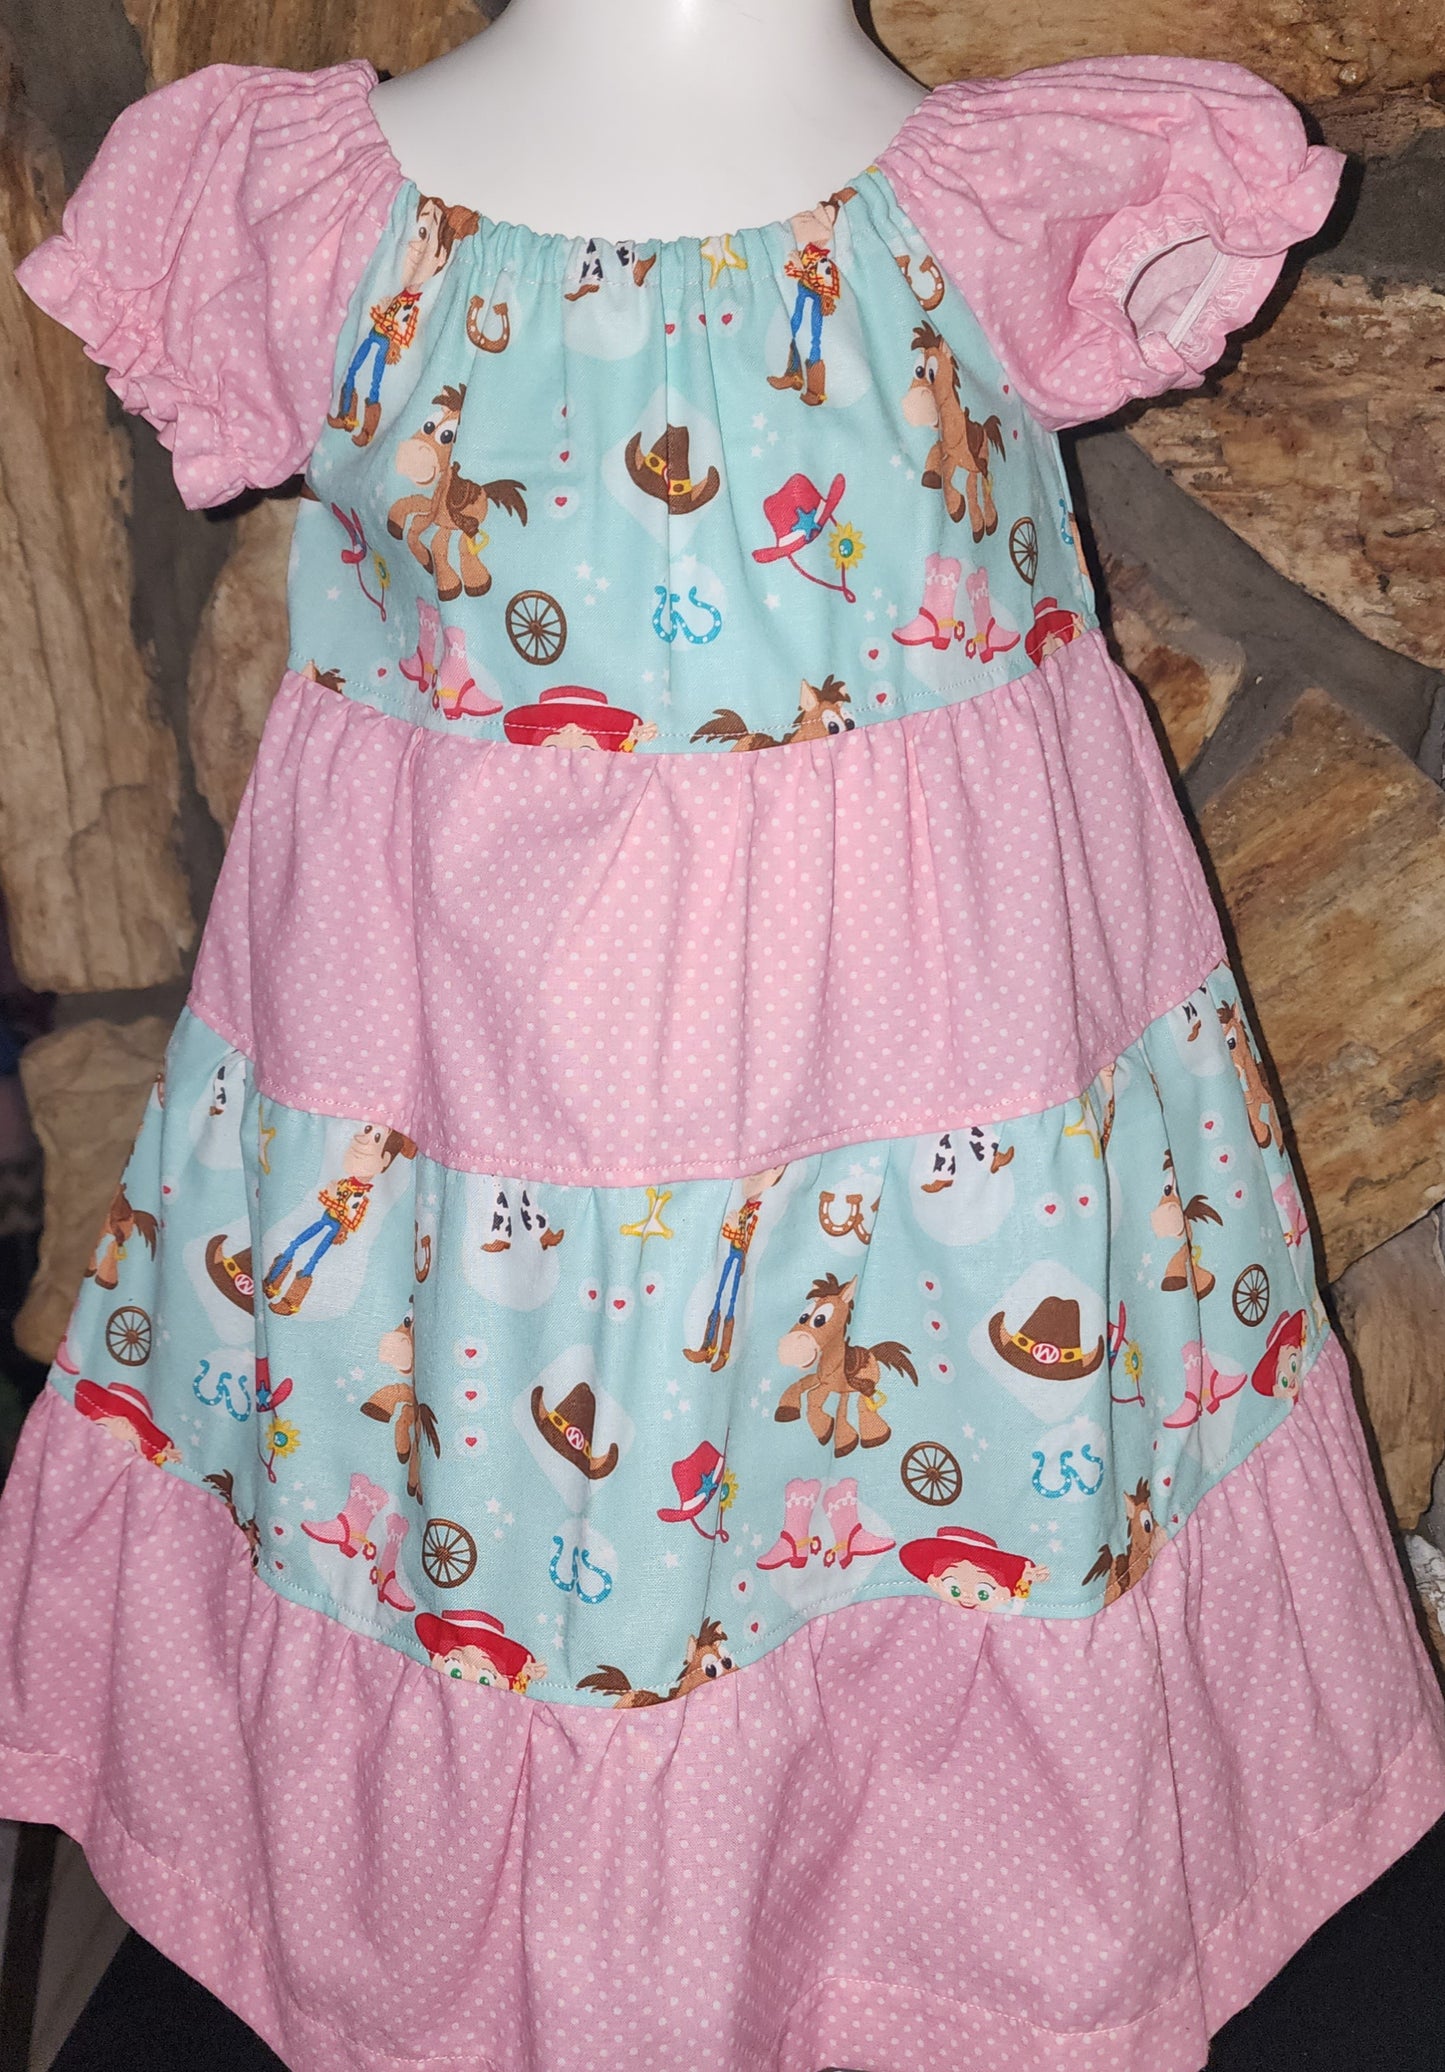 Toy Story Size 2 Dress